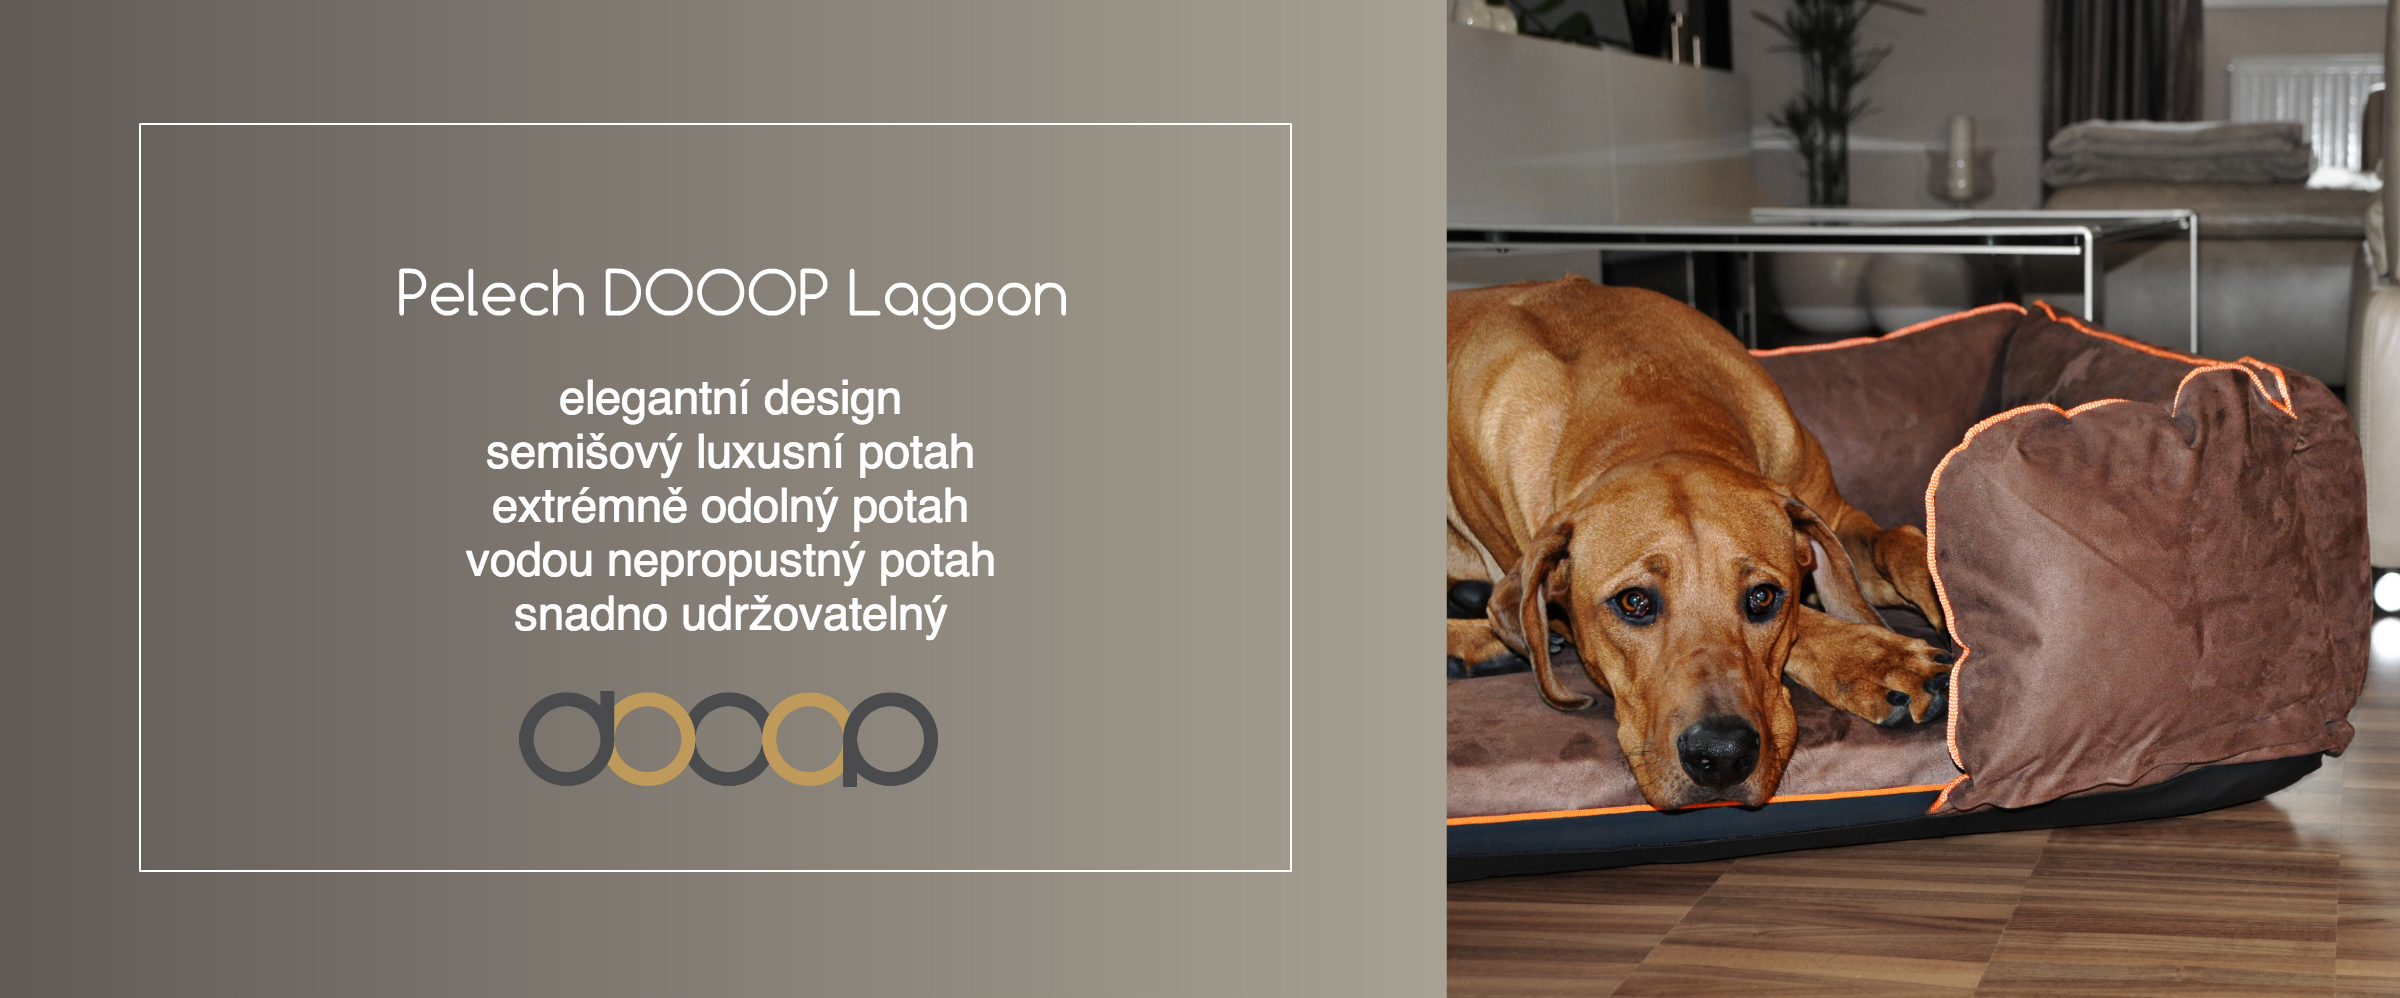 luxusni-designove-odolne-pelechy-dooop-lagoon-extrem-pro-psy